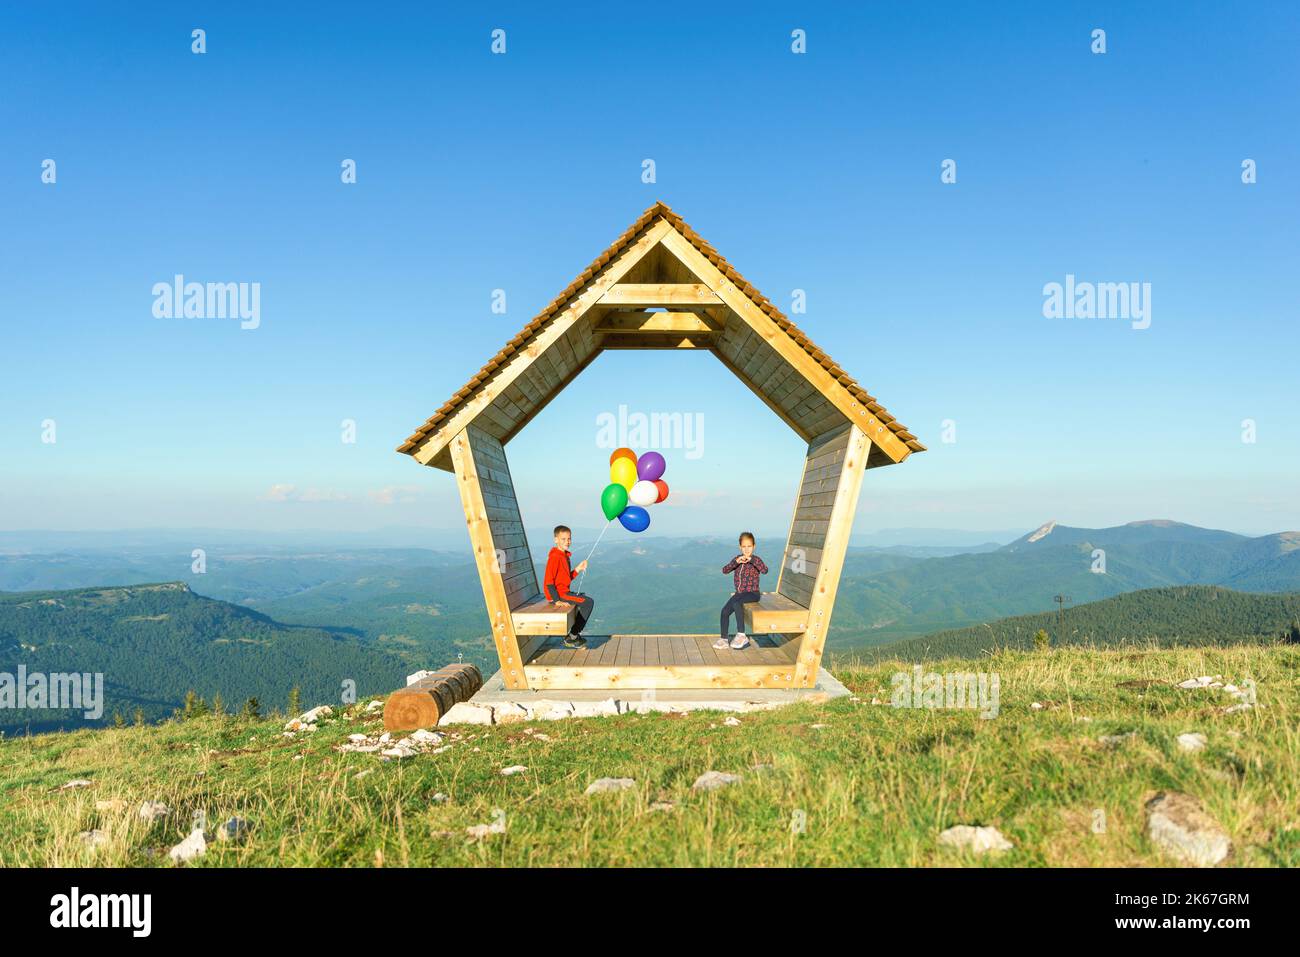 Una ragazza e un ragazzo sono seduti in una casa di legno su una montagna che regge palloncini. Concetto di sicurezza, assicurazione e futuro luminoso Foto Stock